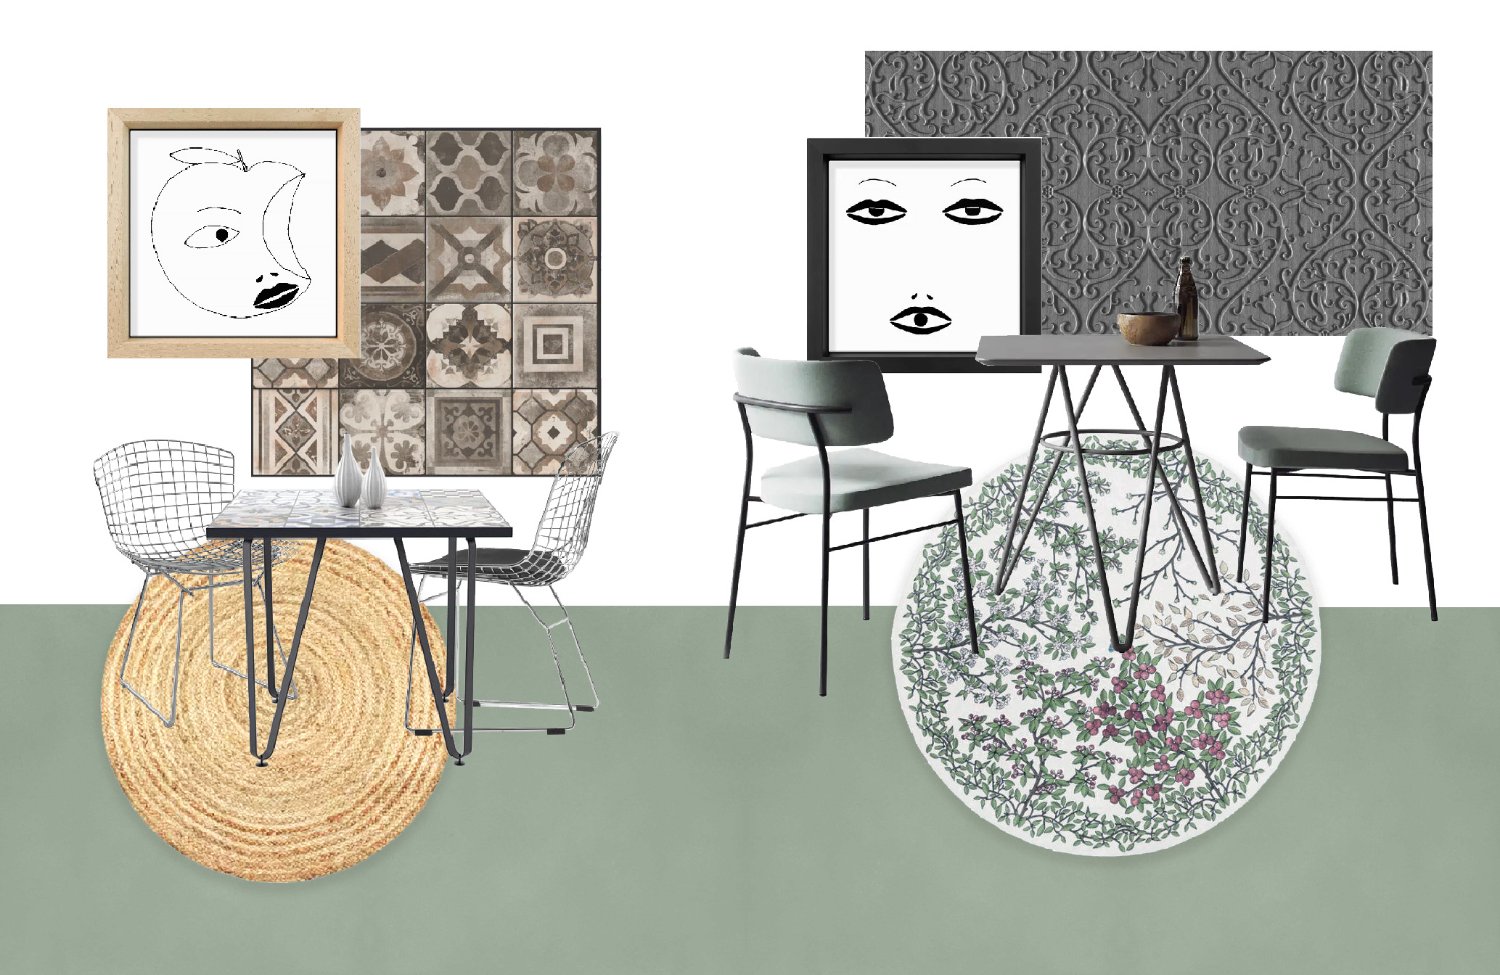 Composizione a cura dello studio Elles Interior Design: rivestimenti, arredi, colori e texture per creare un “angolo bistrot” in cucina